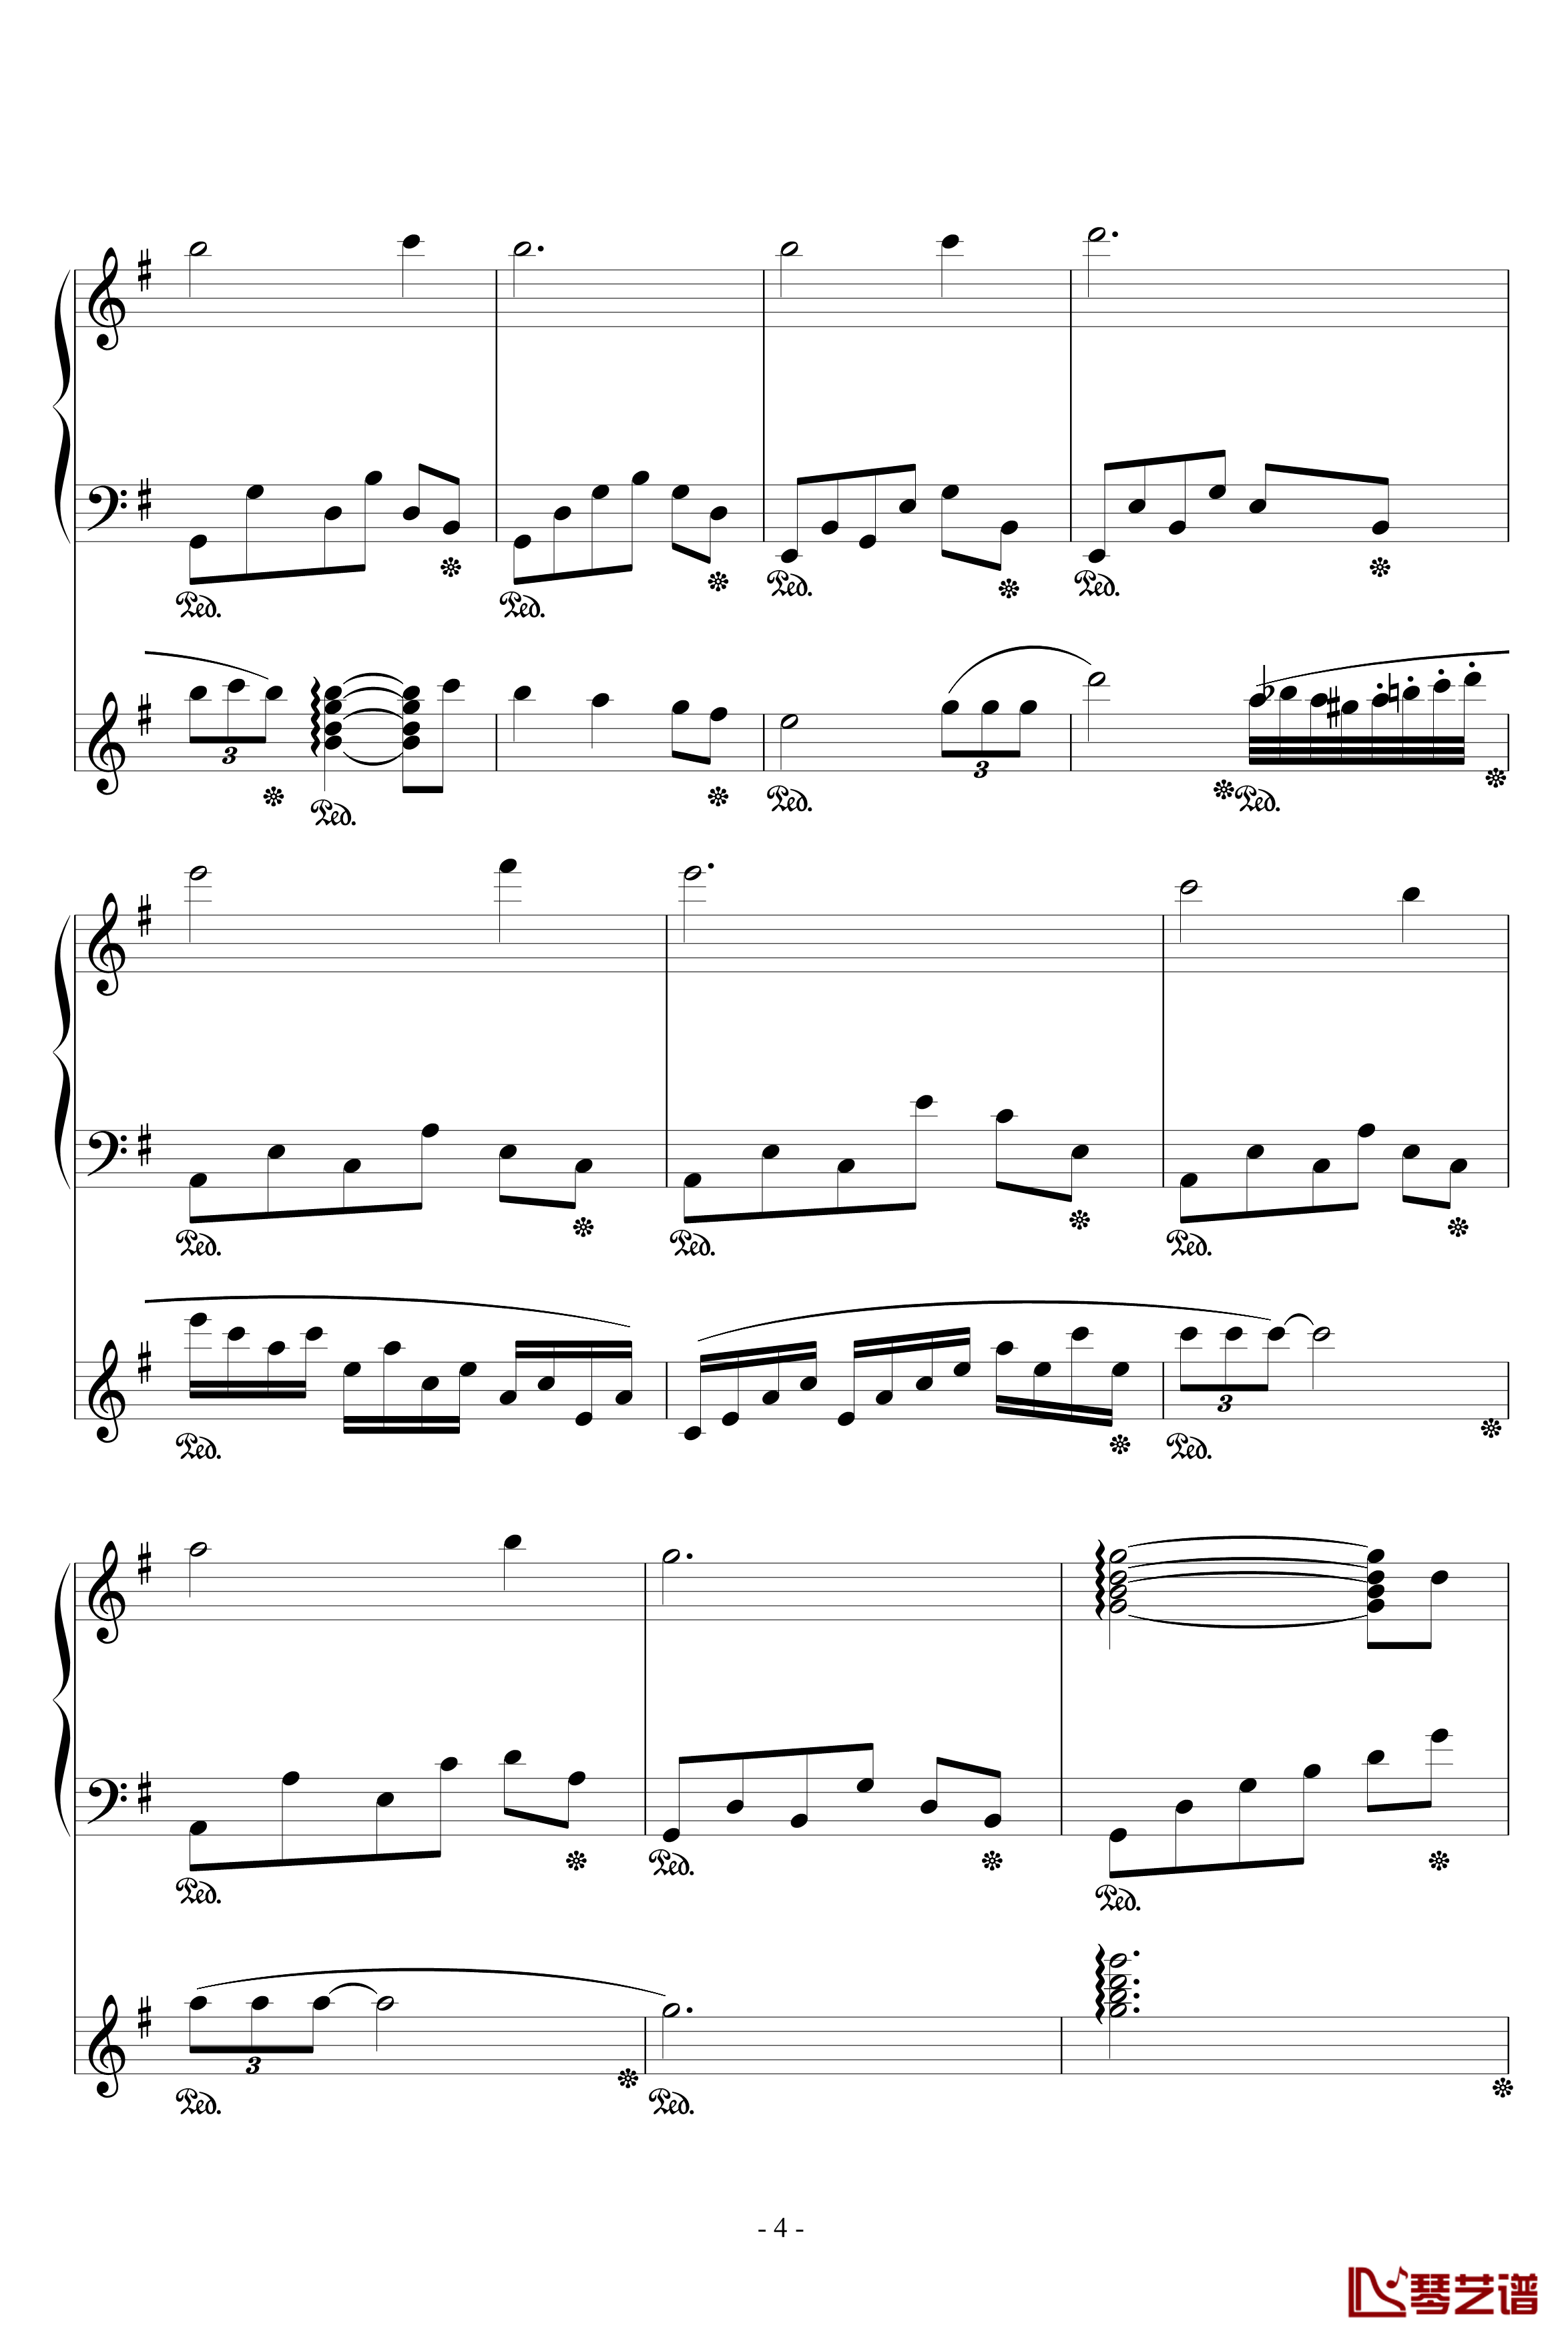 流星小幻想曲钢琴谱-修改-升c小调4